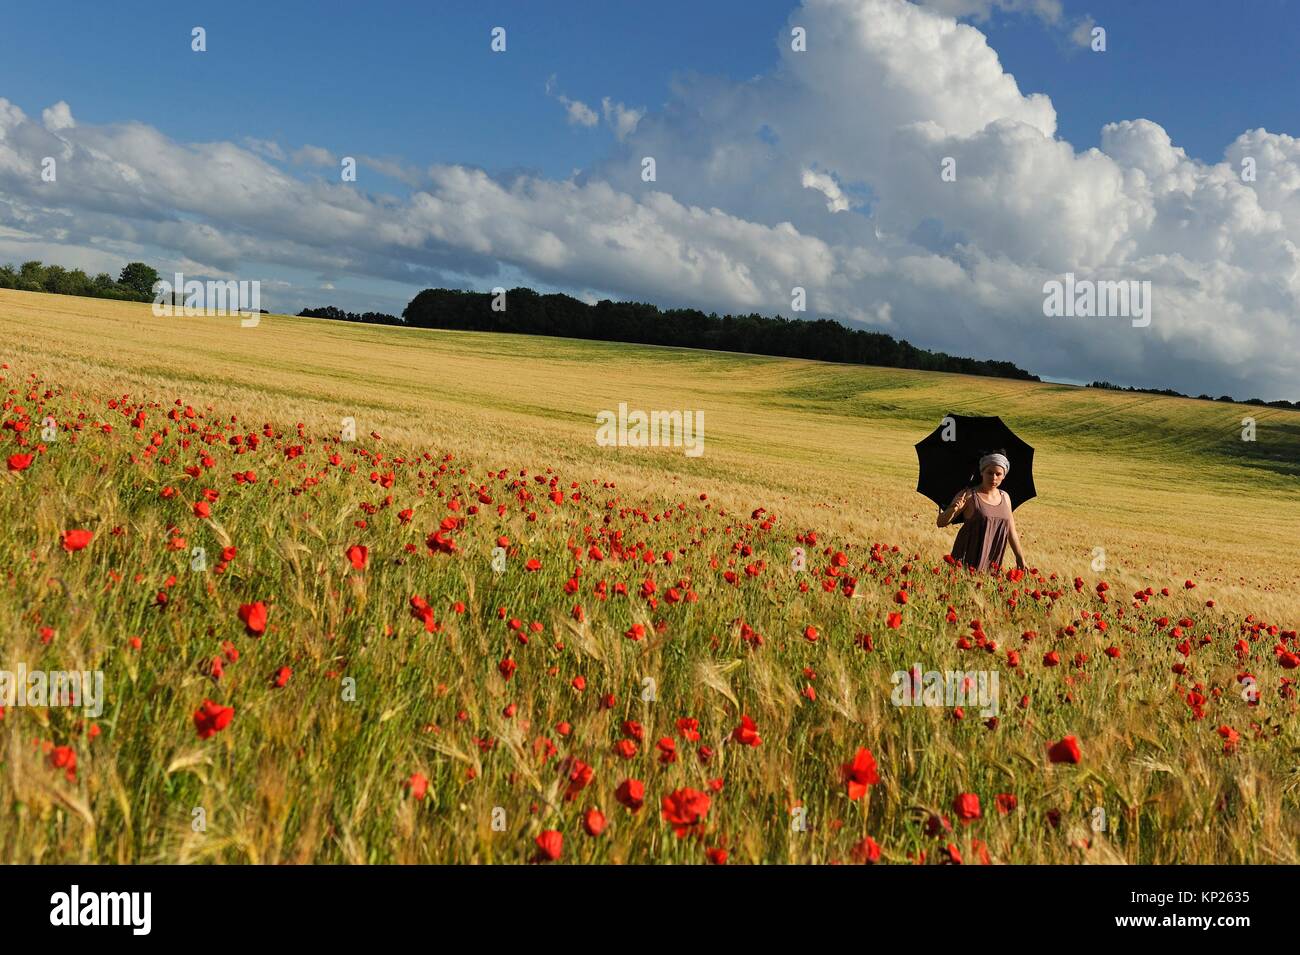 Mujer joven con sombrilla en un campo de cereales salpicado de amapolas, Francia, Europa. Foto de stock